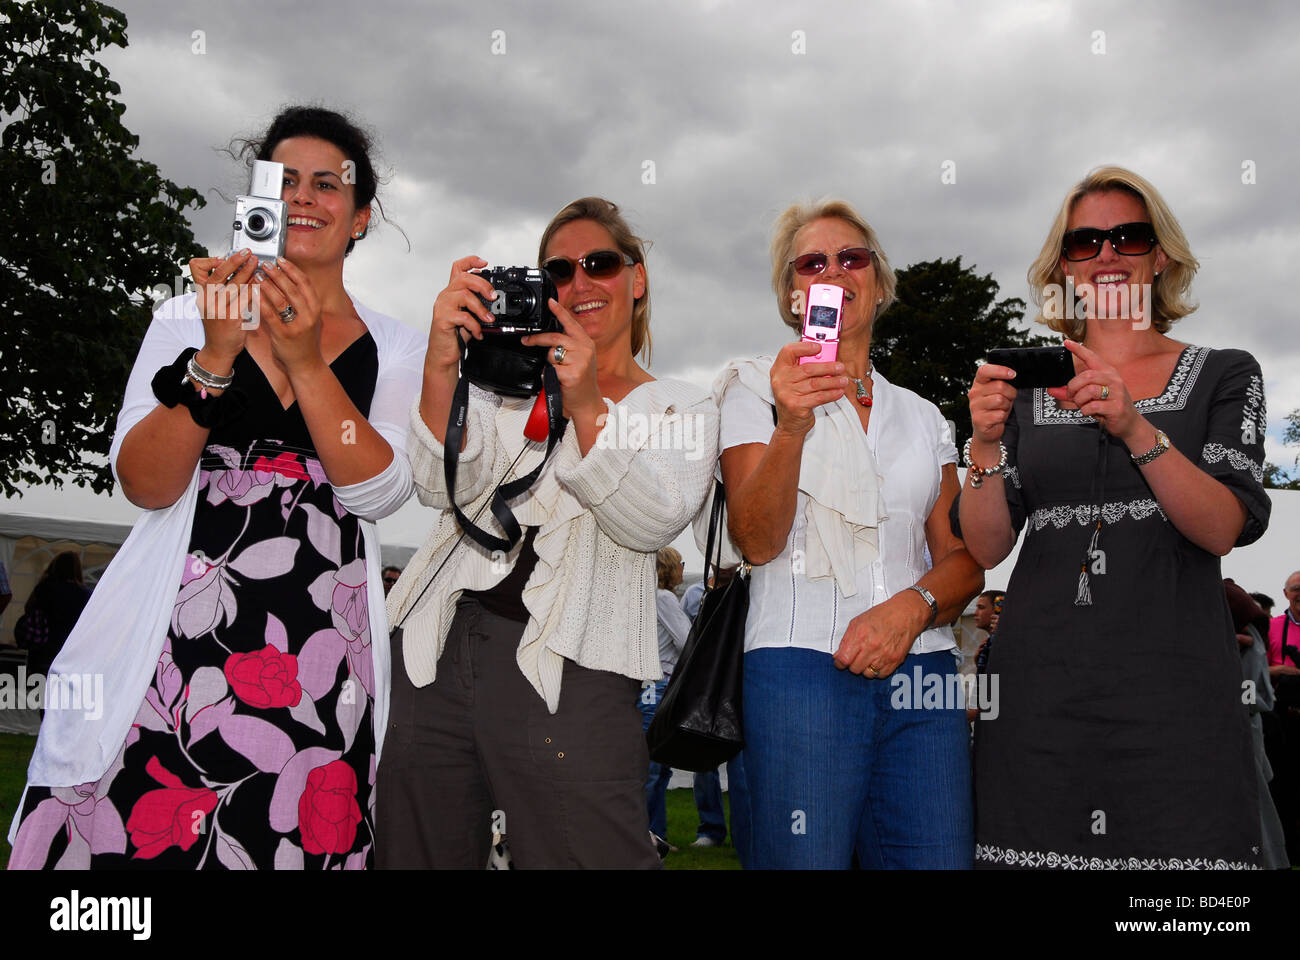 Cuatro mujeres en la aldea Oakhanger espectáculo con sus cámaras, Oakhanger, Hampshire, Reino Unido. Foto de stock